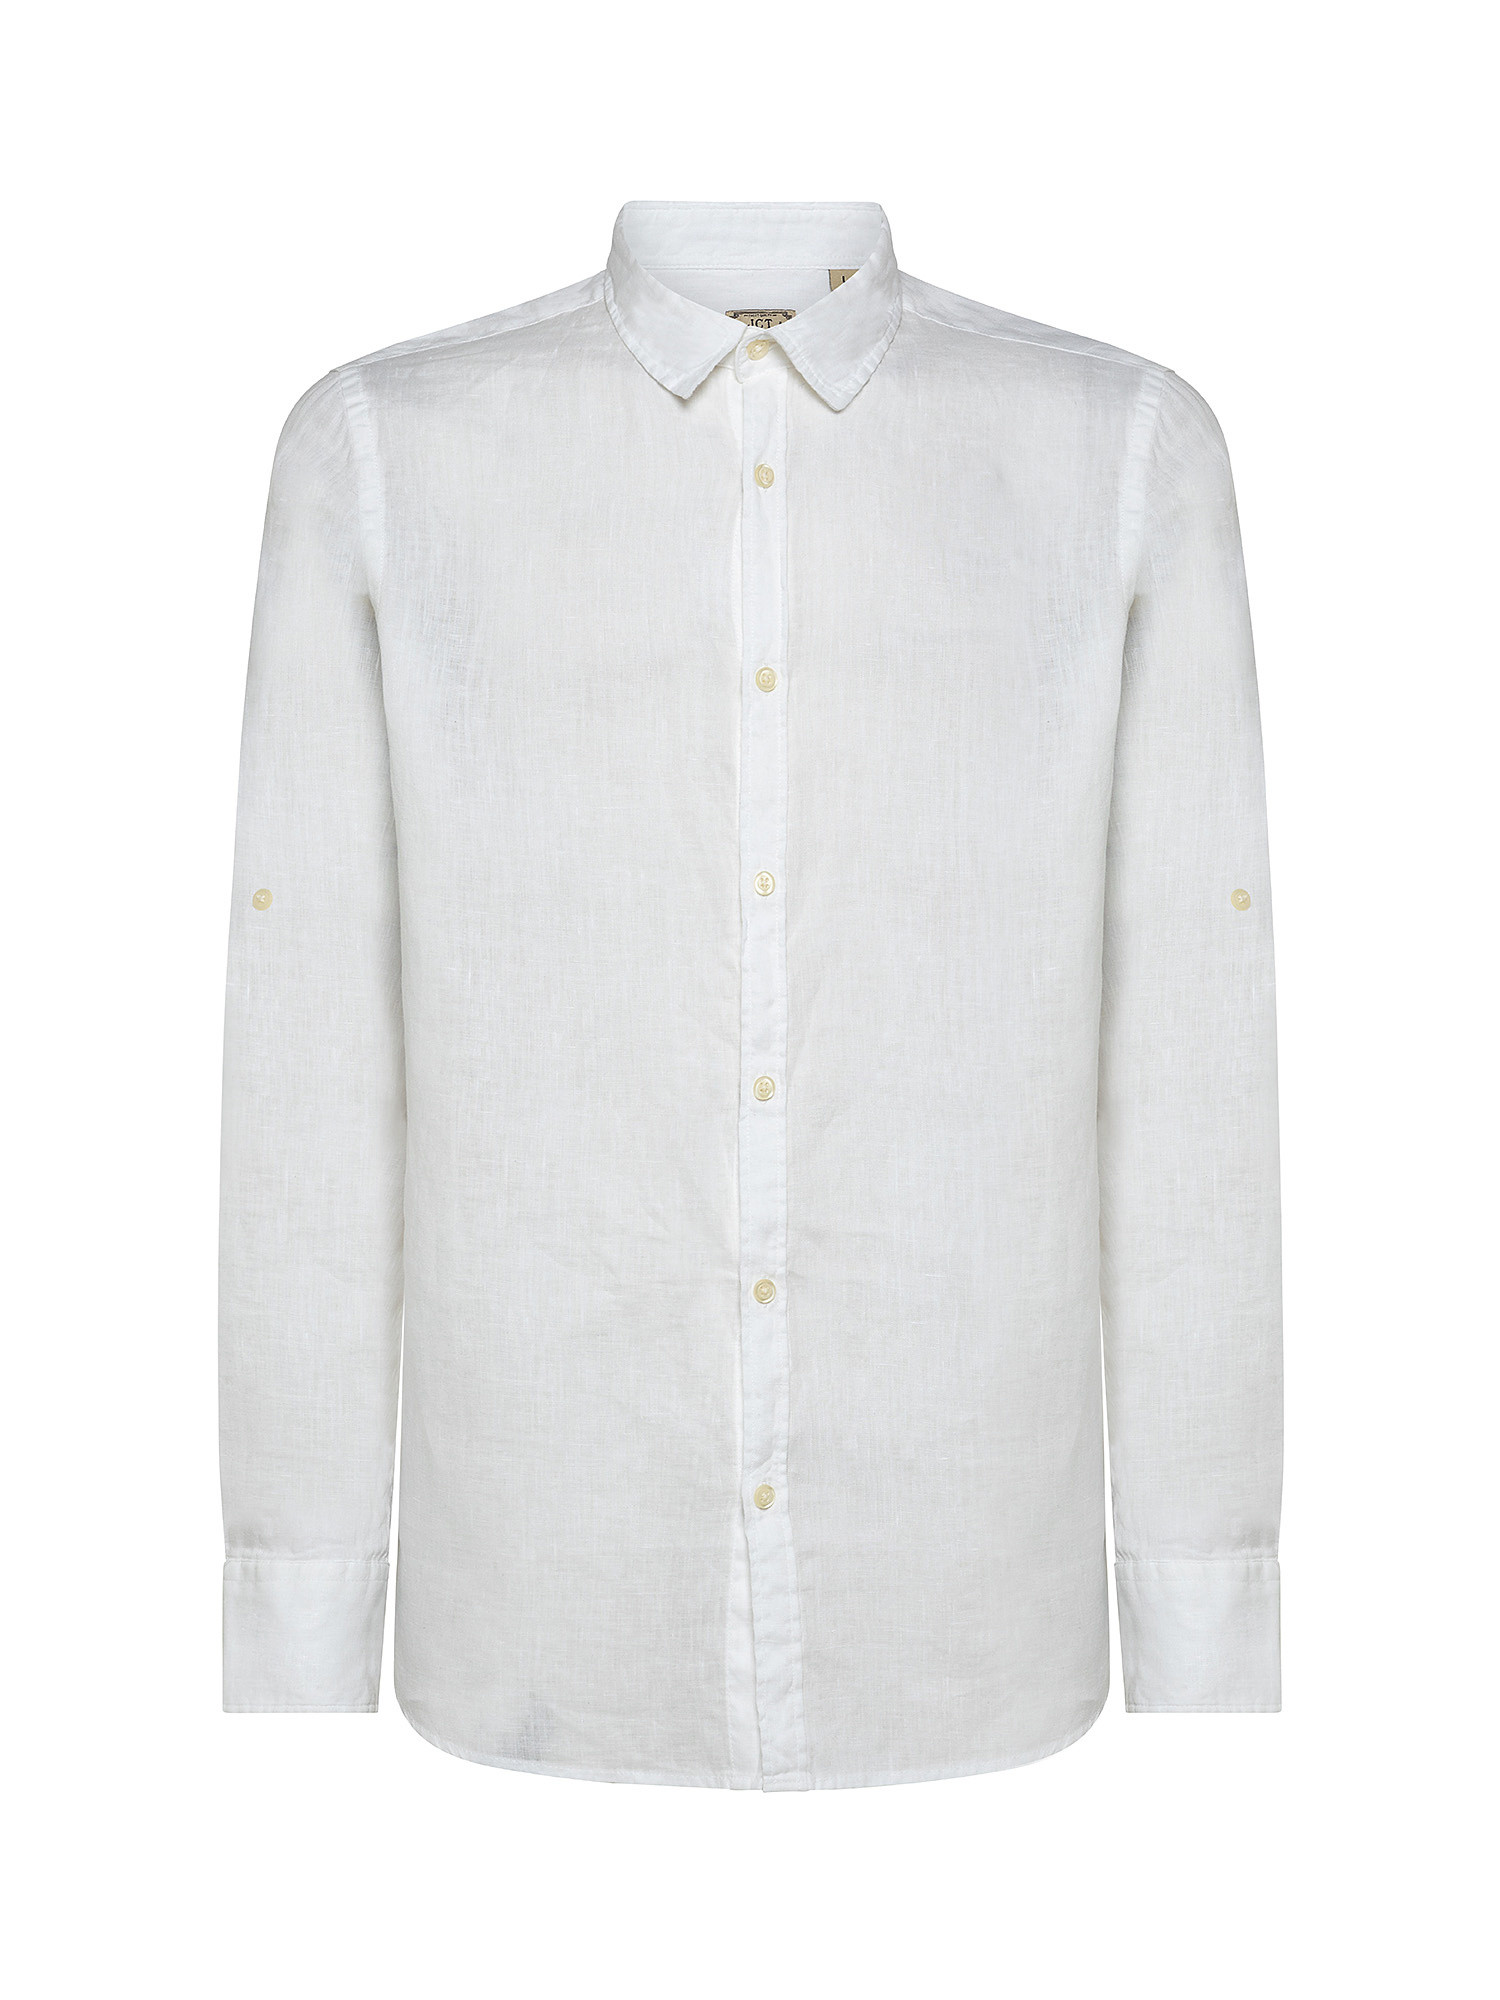 Camicia puro lino collo francese, Bianco, large